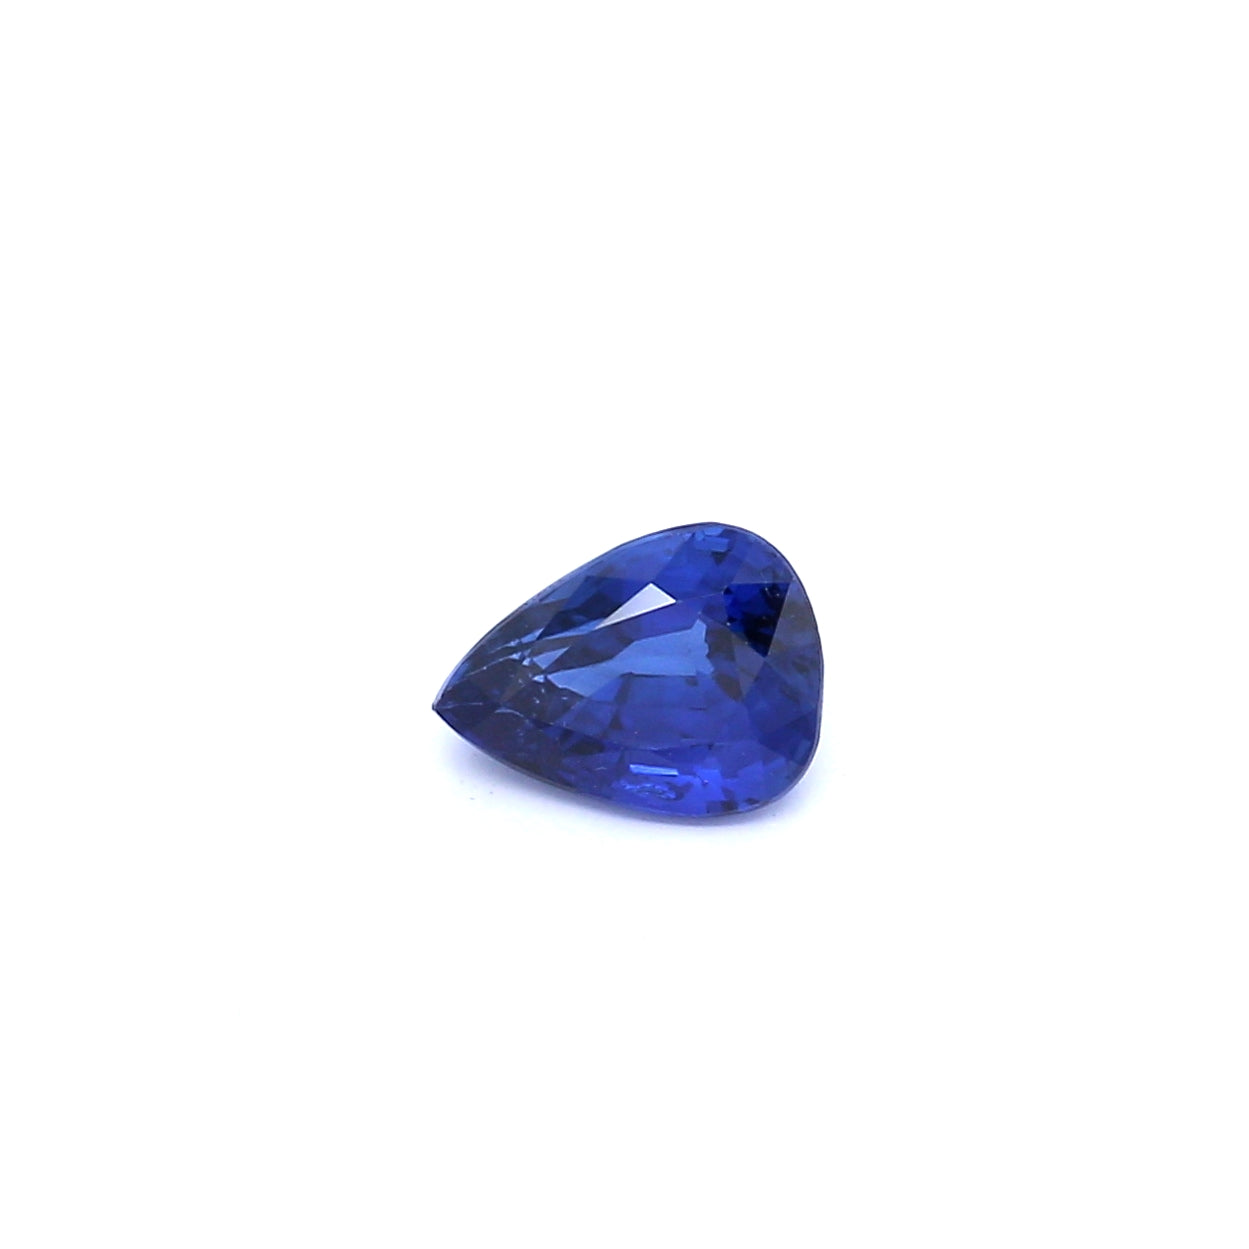 1.00ct Pear Shape Sapphire, Heated, Sri Lanka - 6.76 x 4.99 x 3.80mm